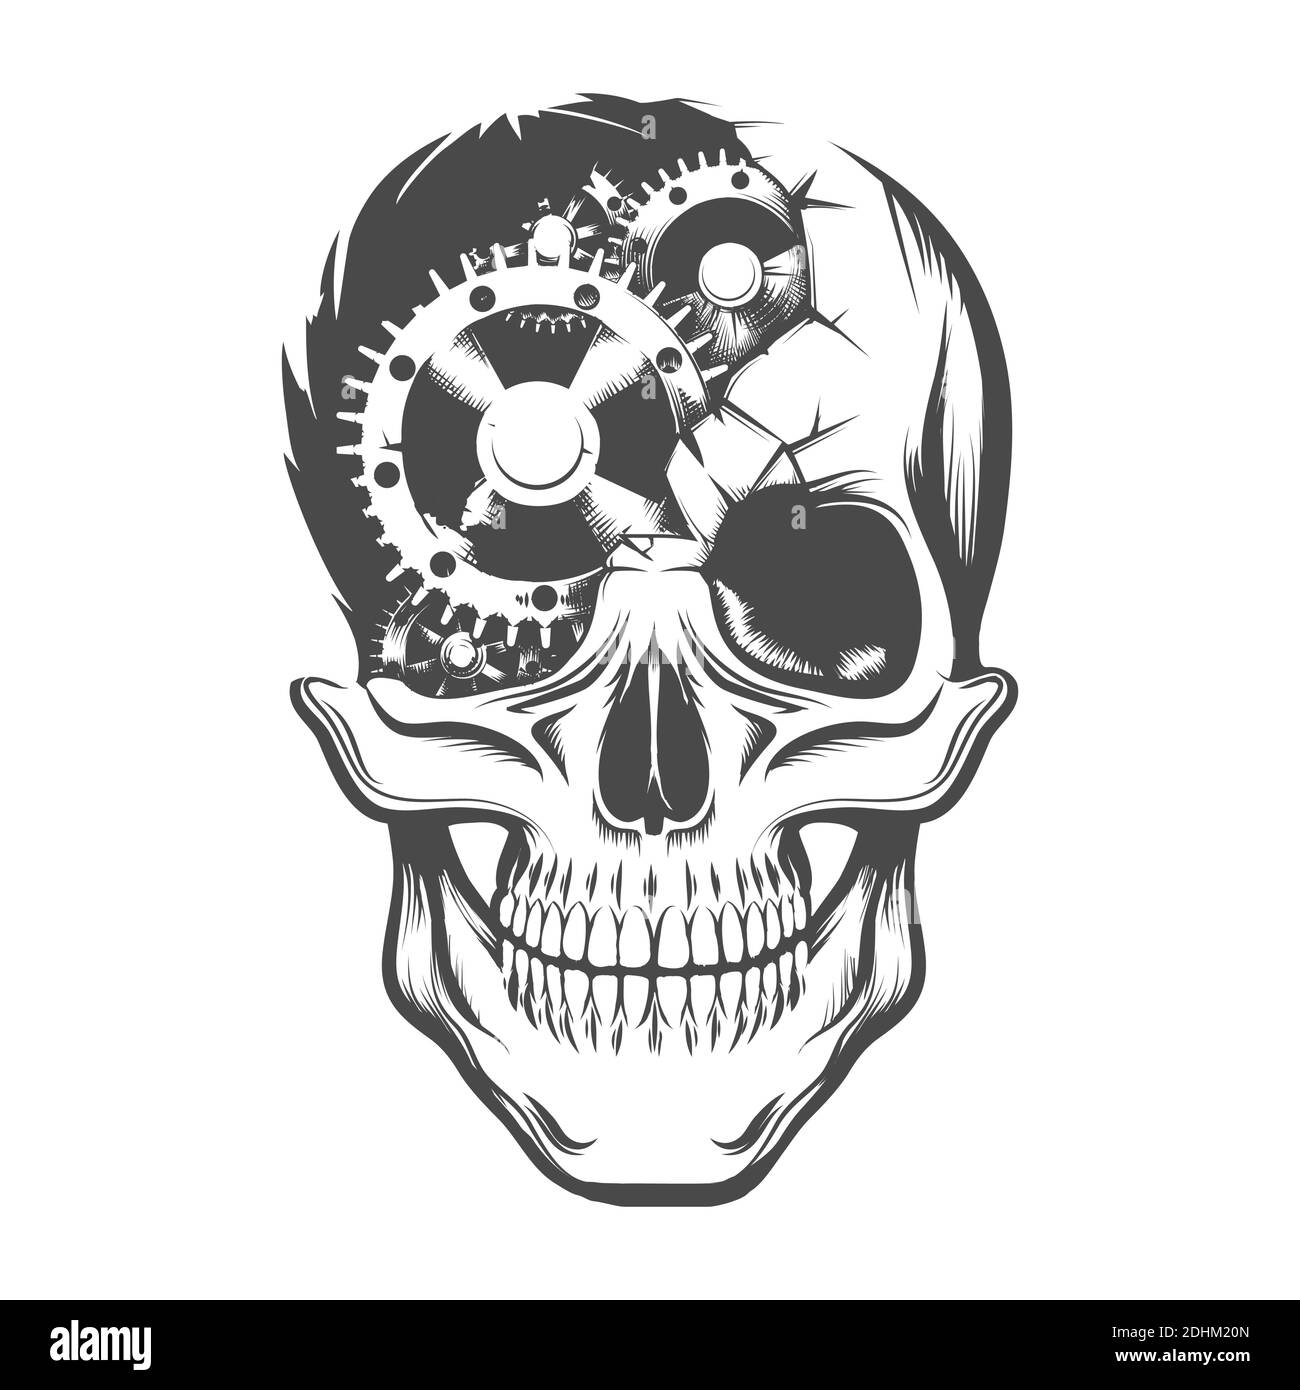 Tattoo of Human Skull with broken Clockwork Gears Inside. Vector illustration. Stock Vector